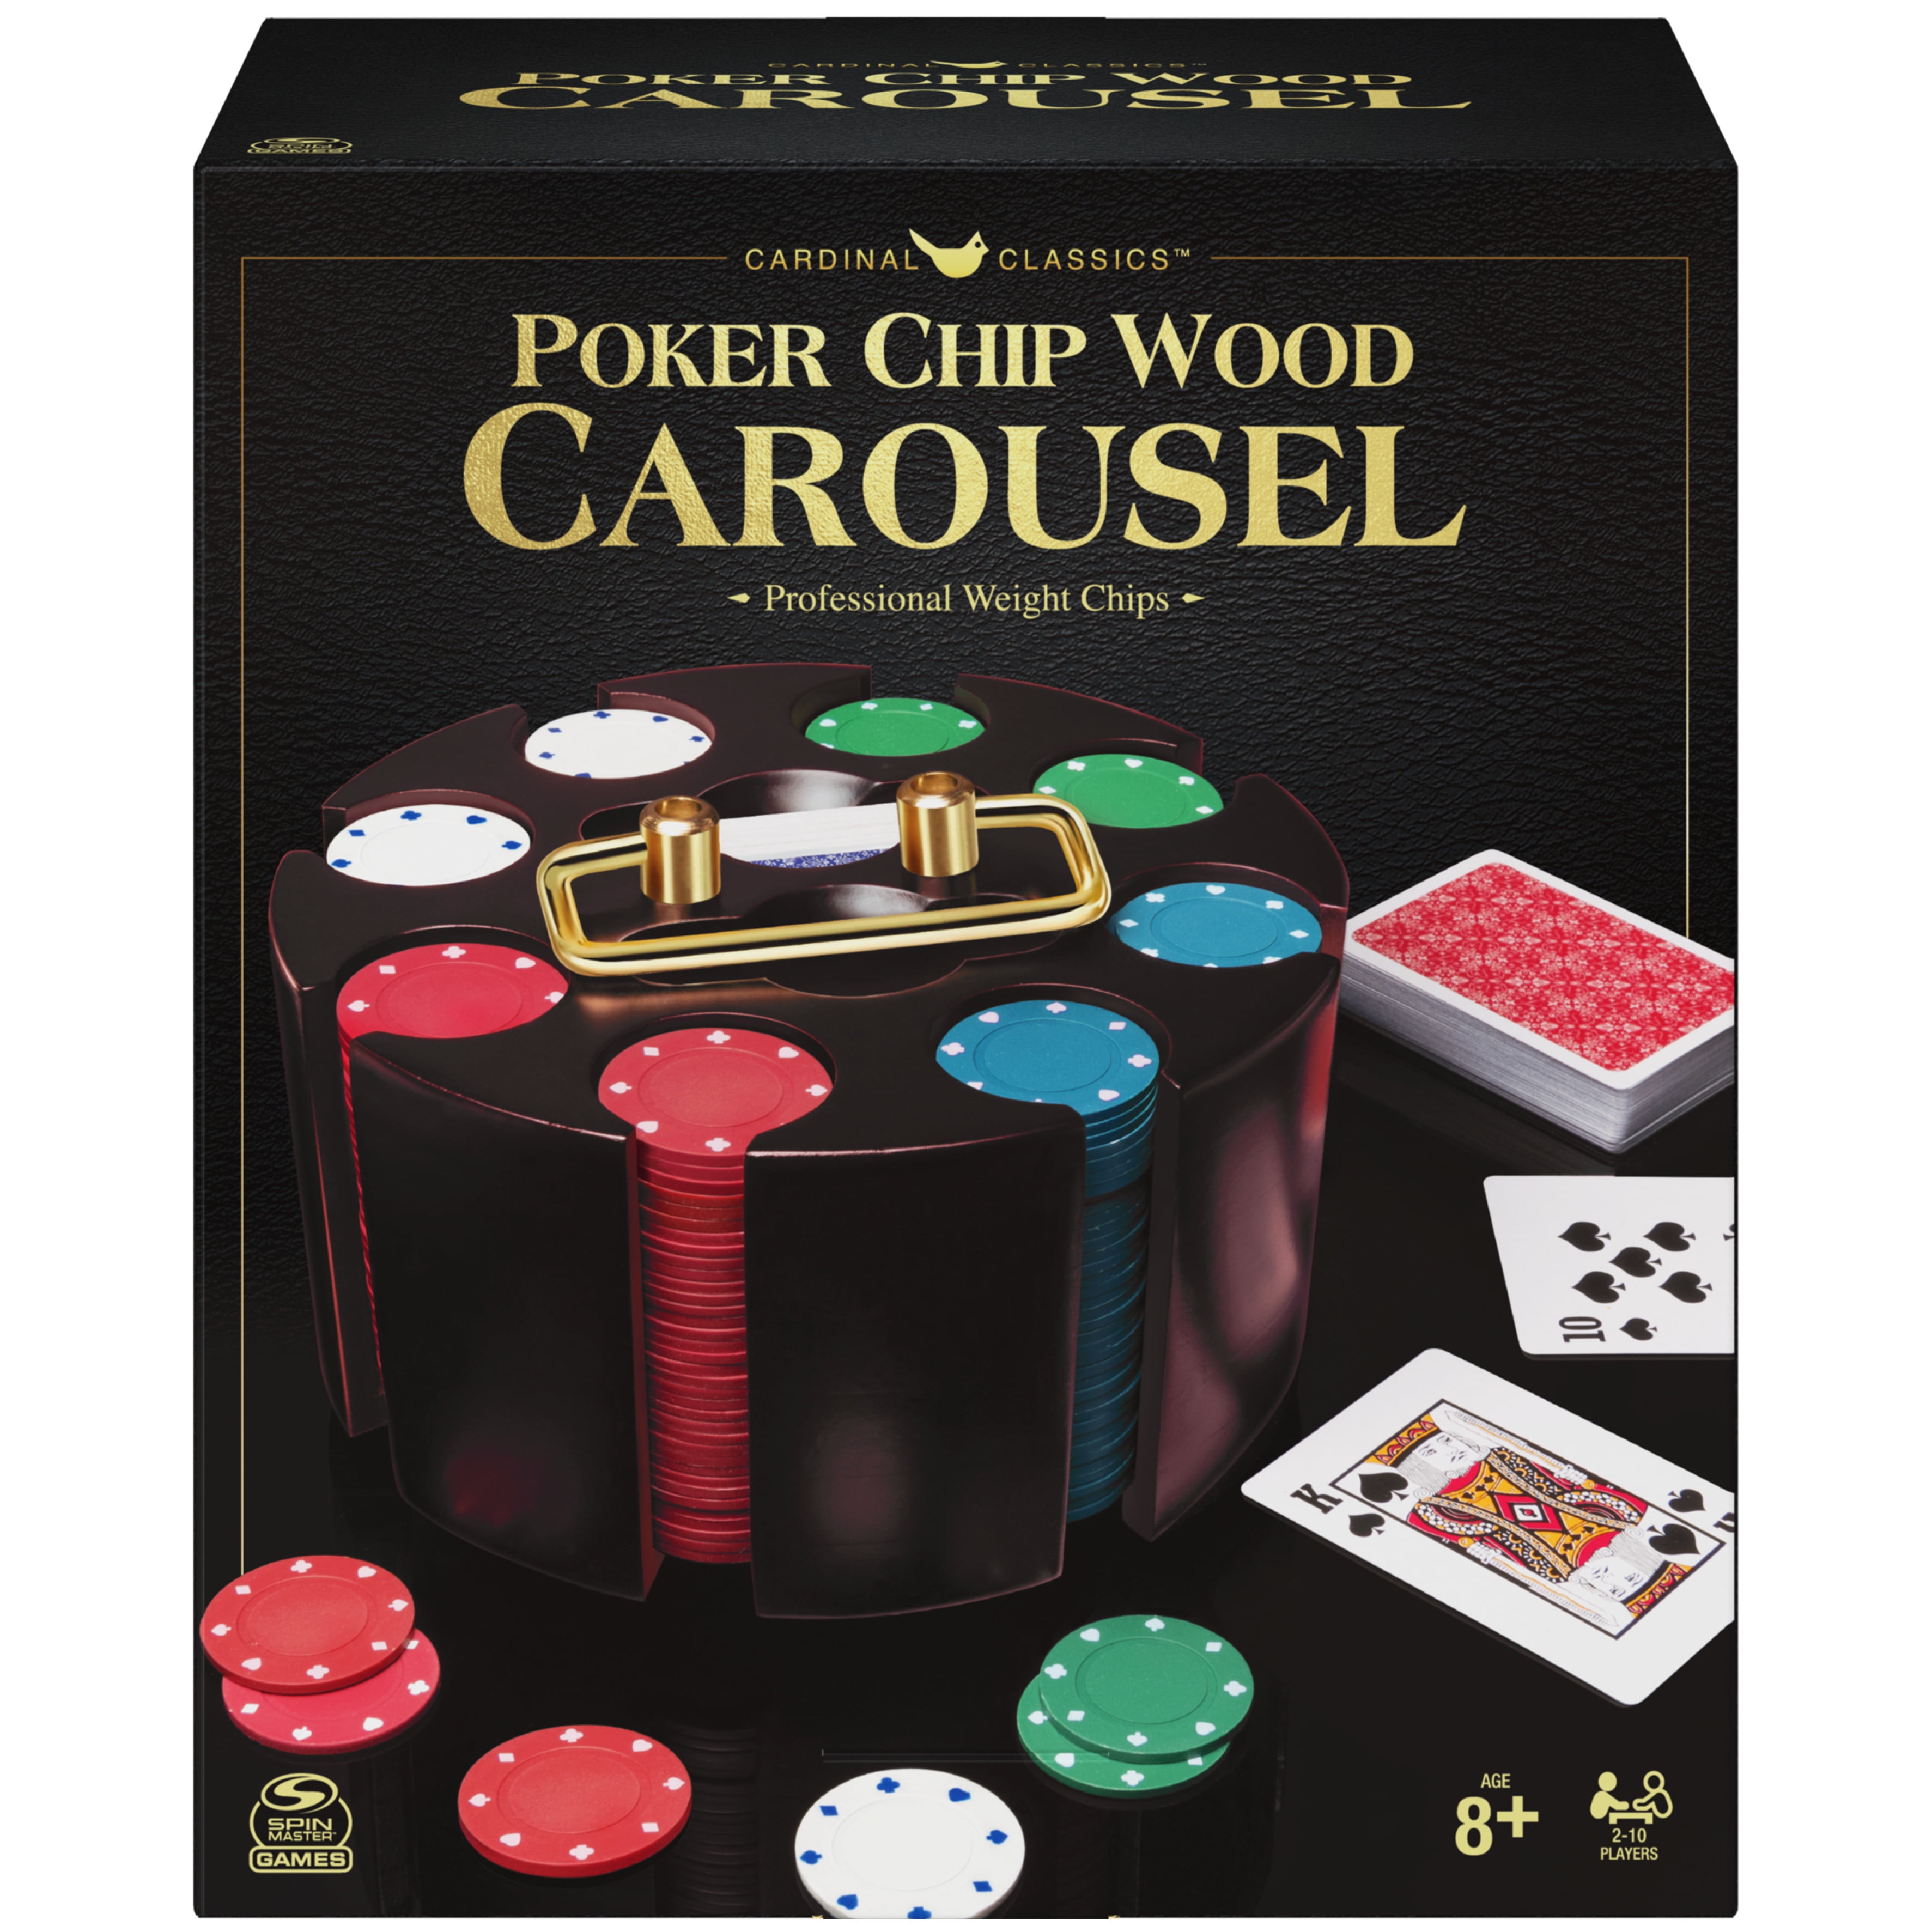 2 Casino Grade Professional Poker Dealer Buttons 